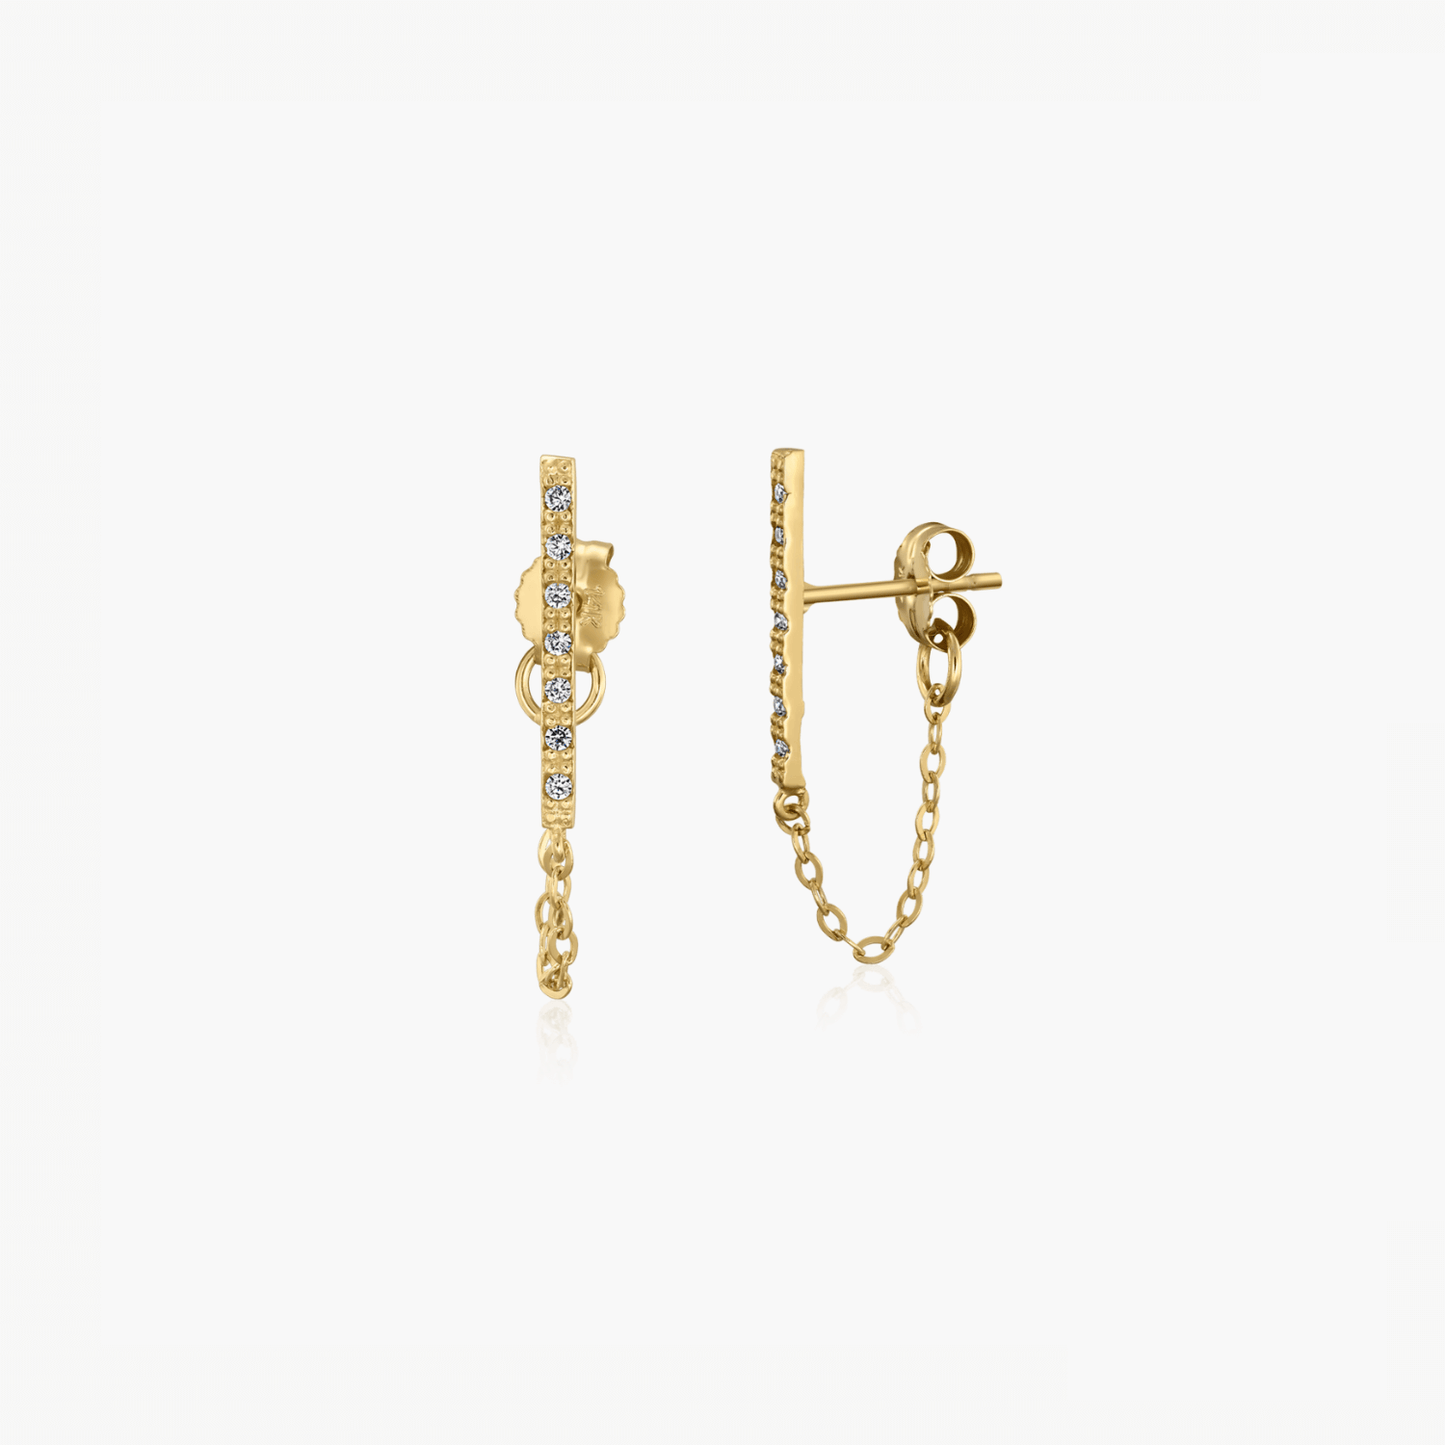 Clara gold earrings